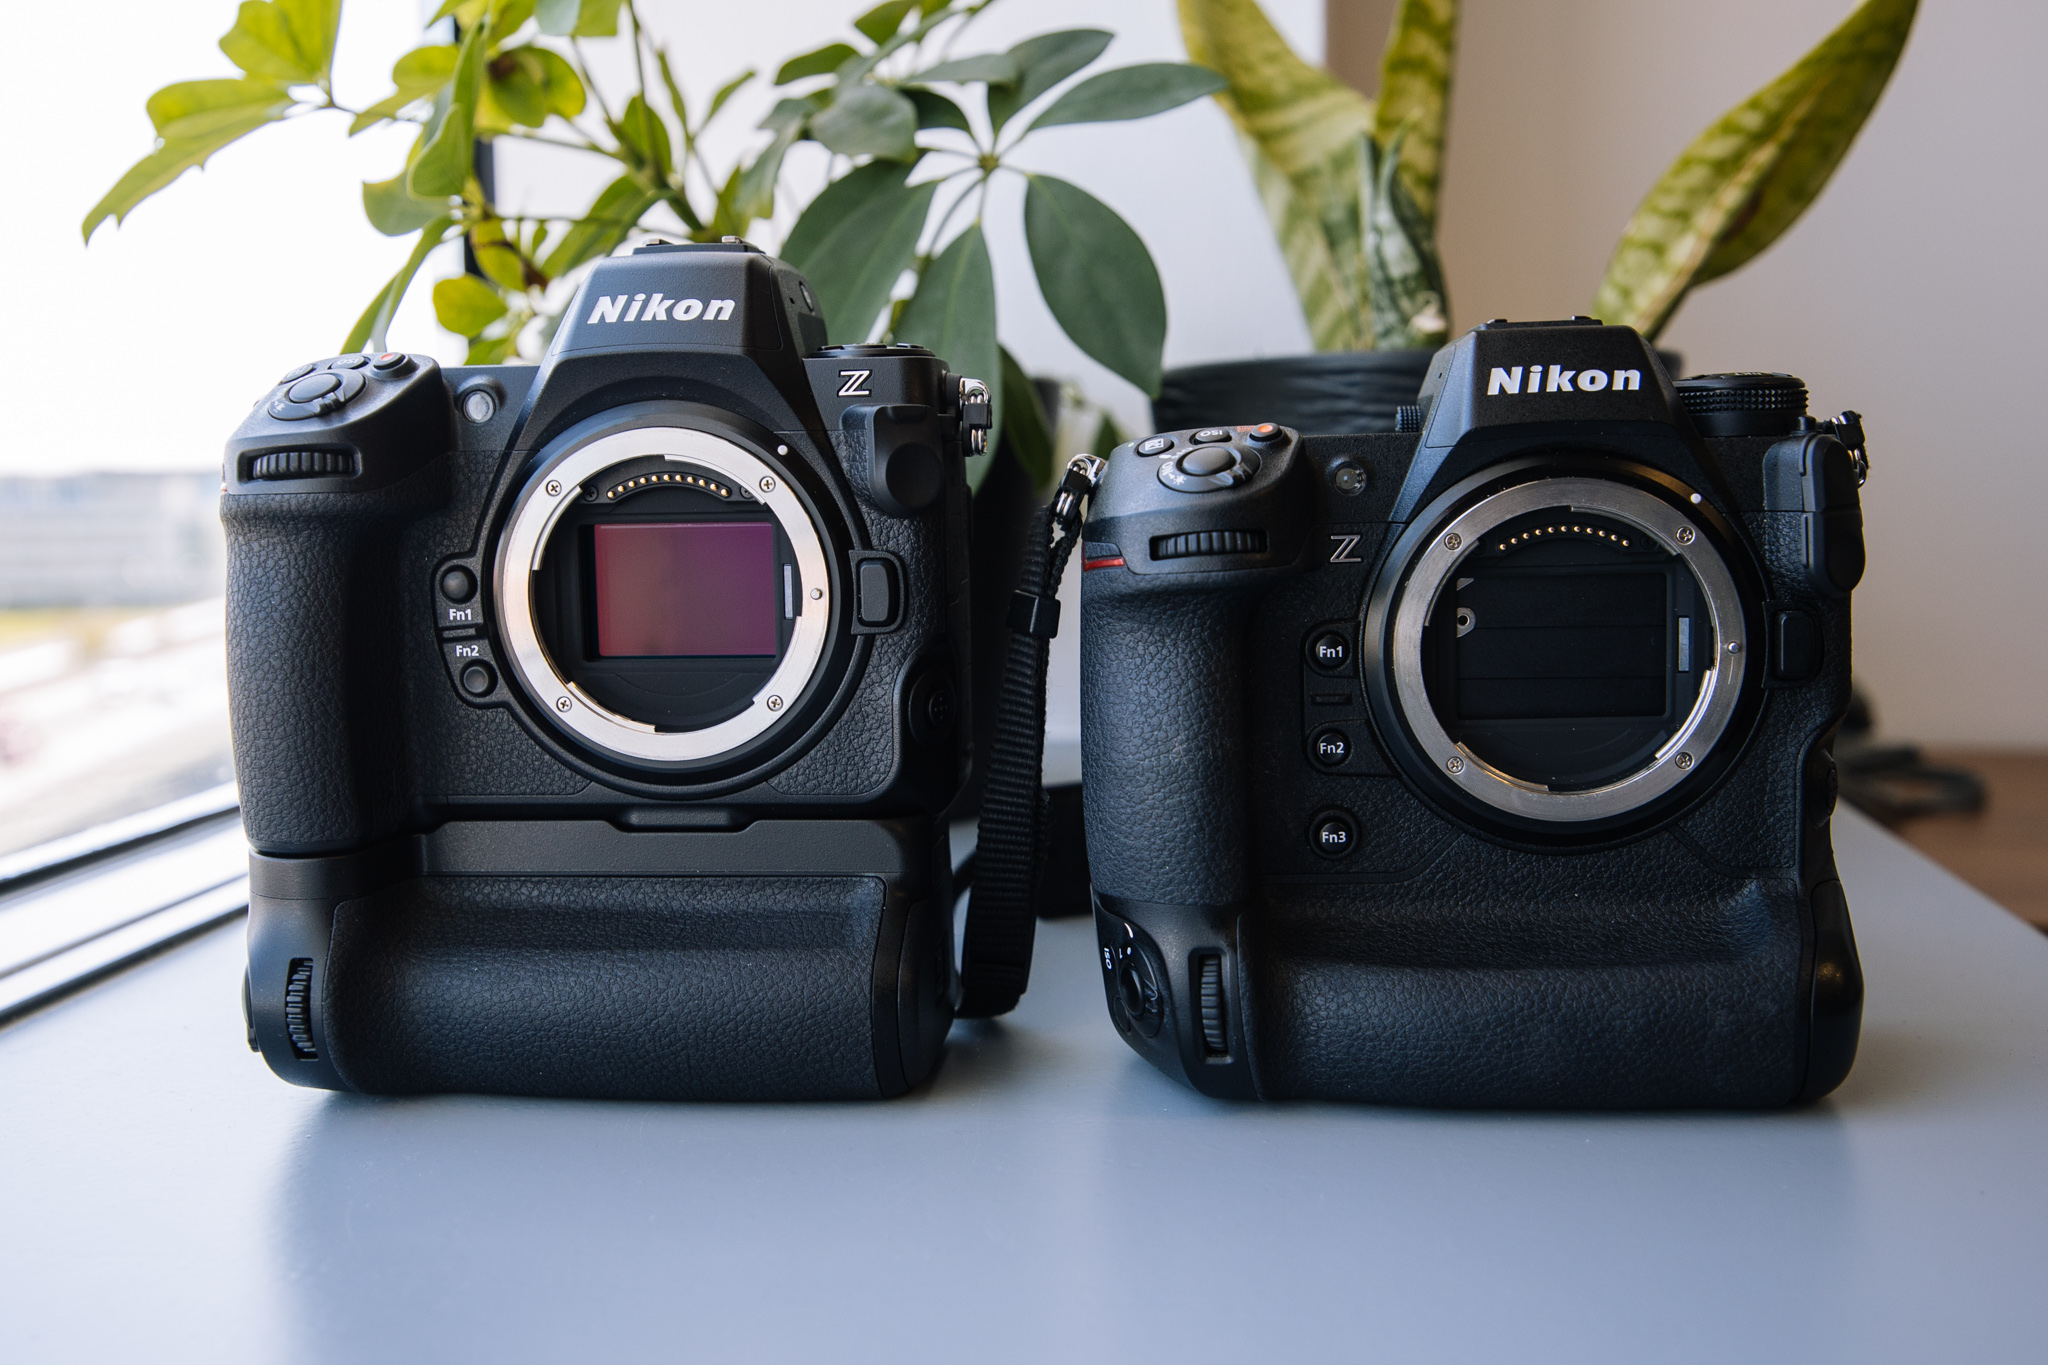 Od lewej: Nikon Z8 z dołączanym gripem oraz Nikon Z9, który ma wbudowany grip. Fot. KB.